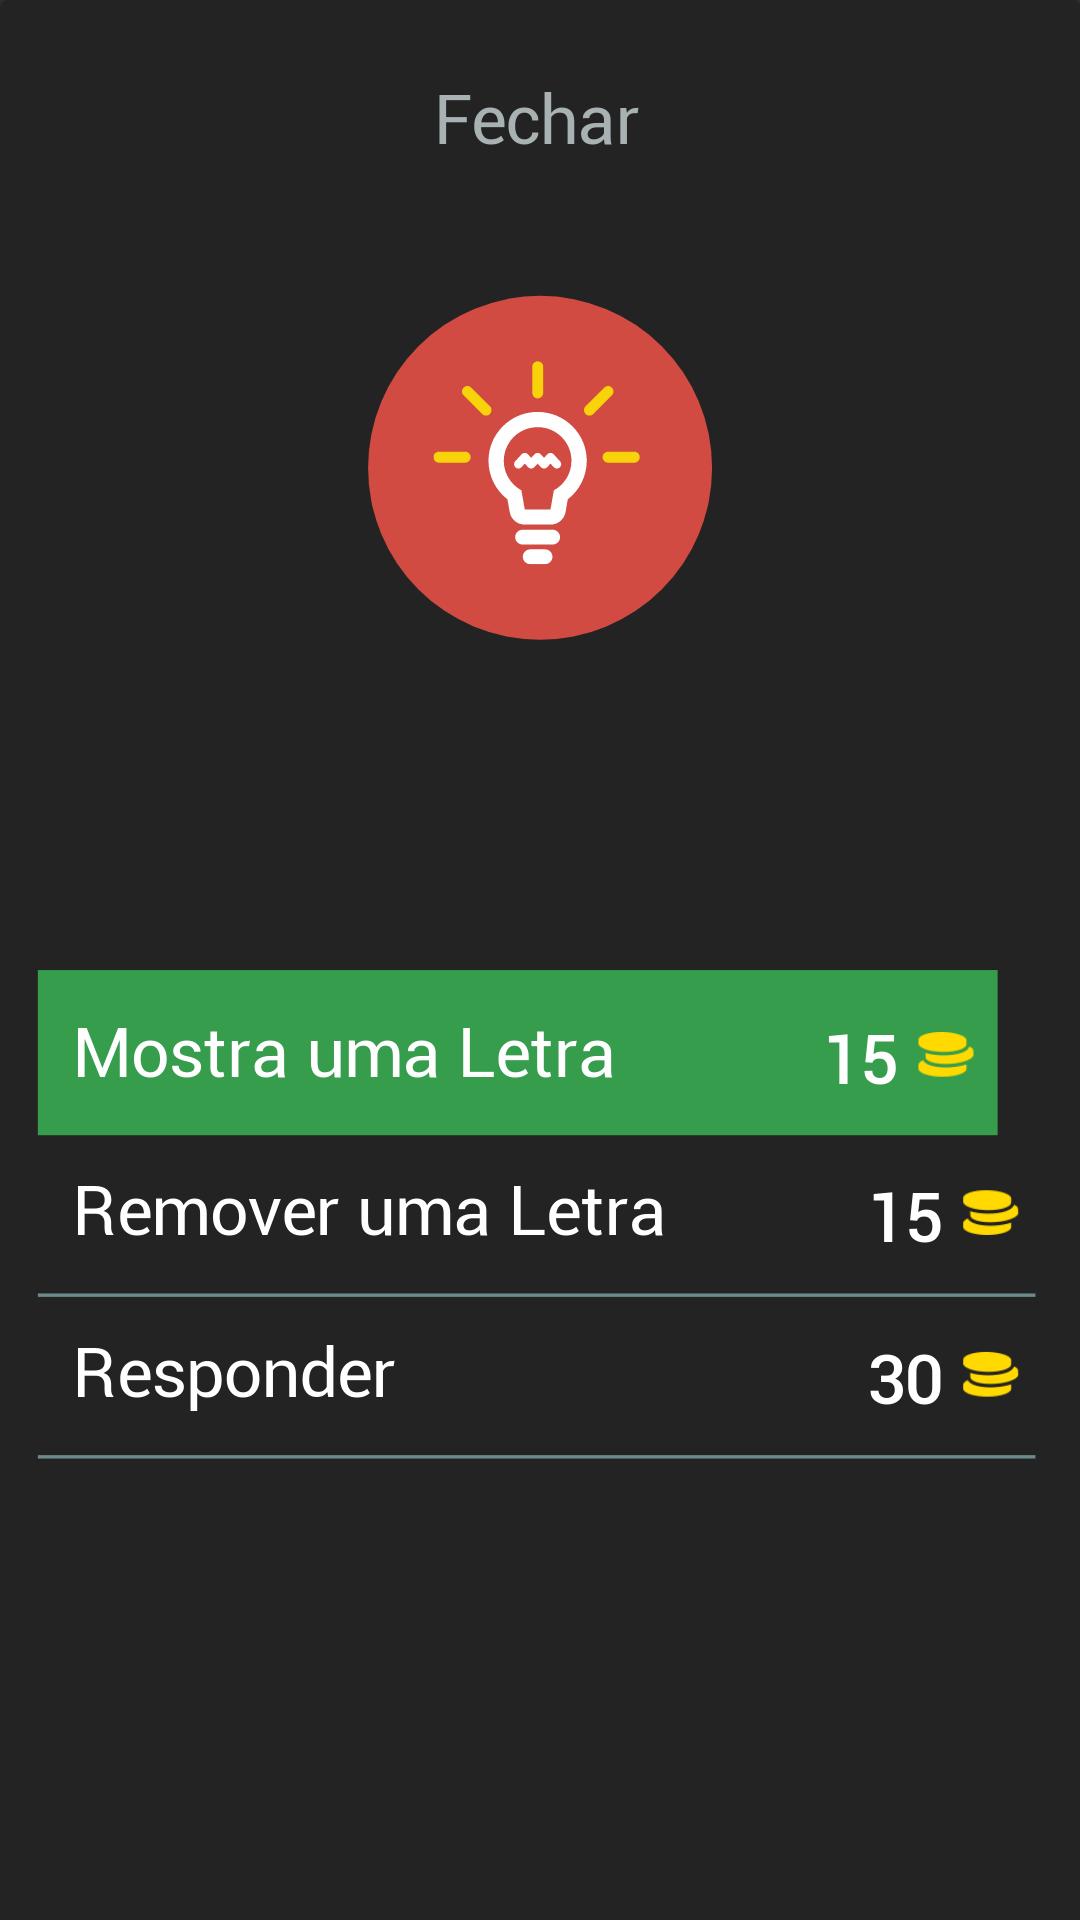 Flamengo App: Quiz de Futebol APK برای دانلود اندروید